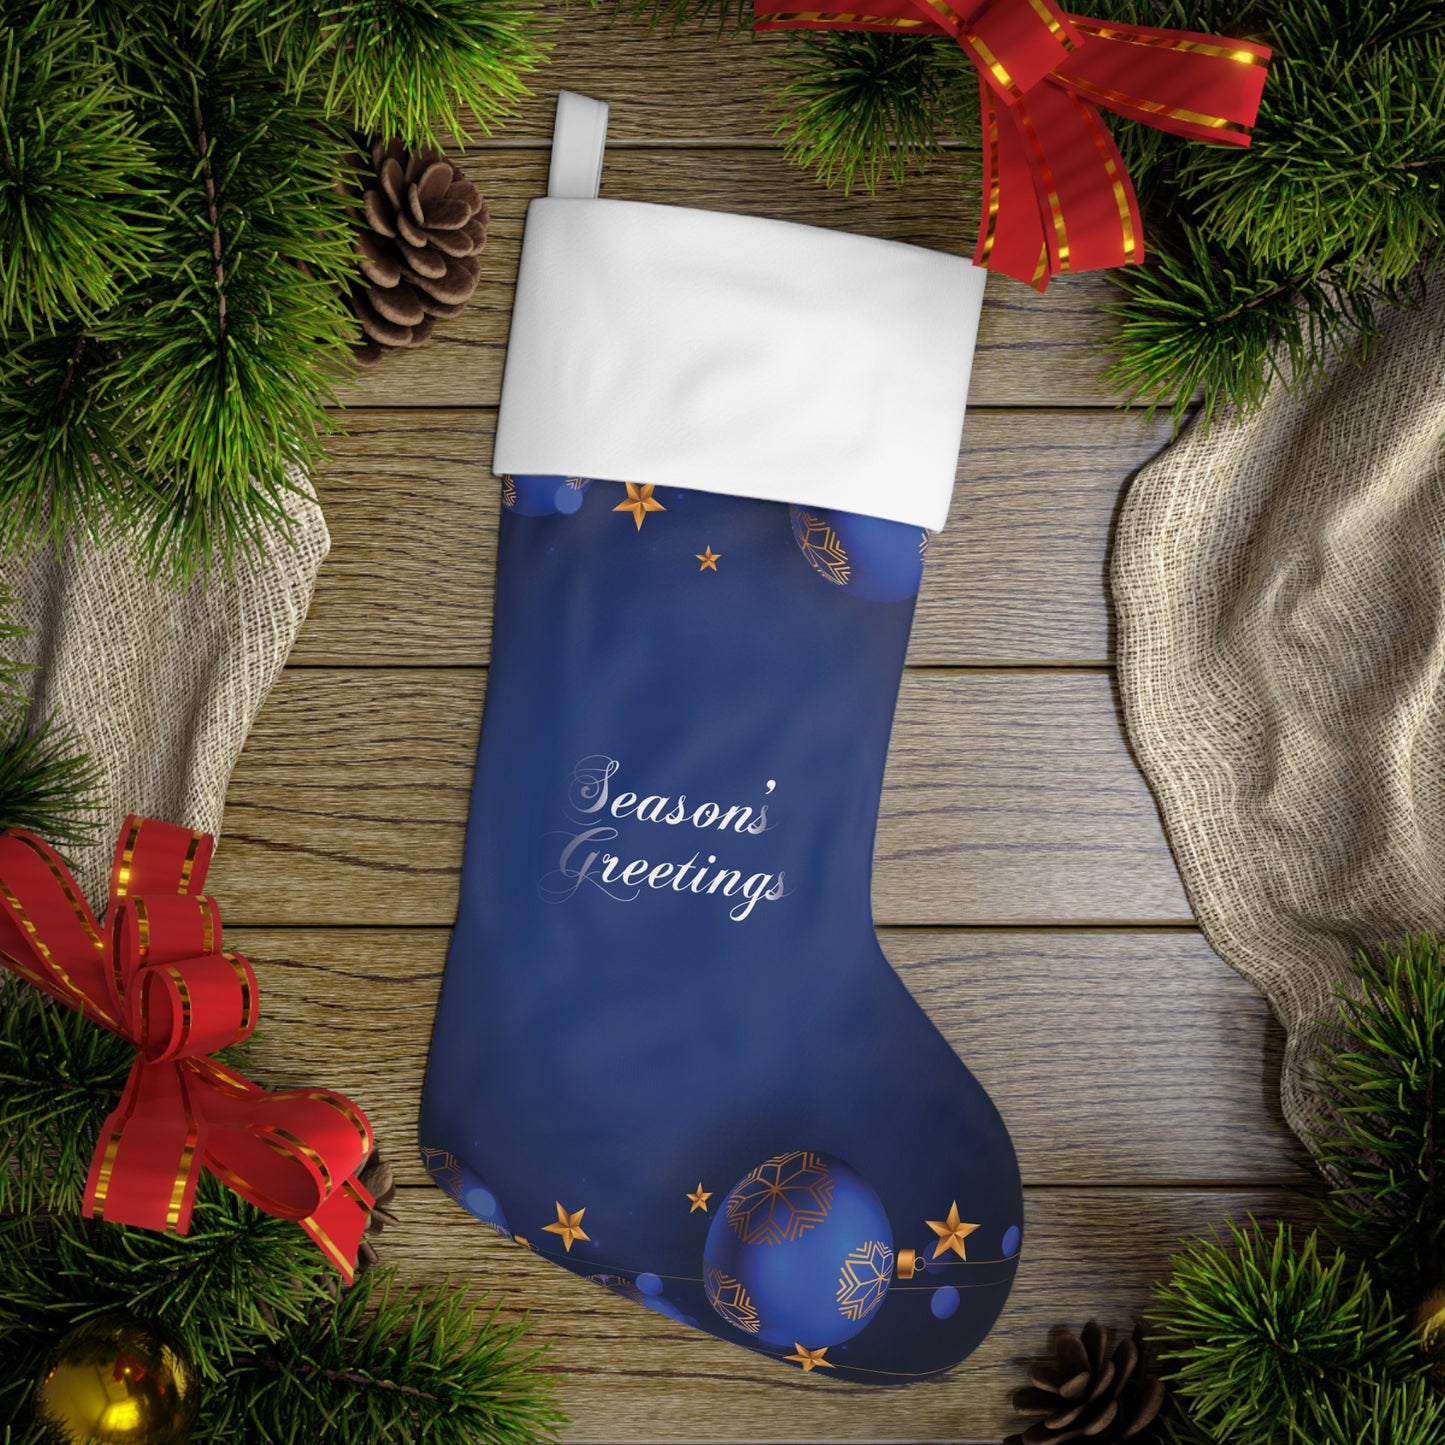 Holiday Stocking, Season's Greetings Christmas Stockings, Blue